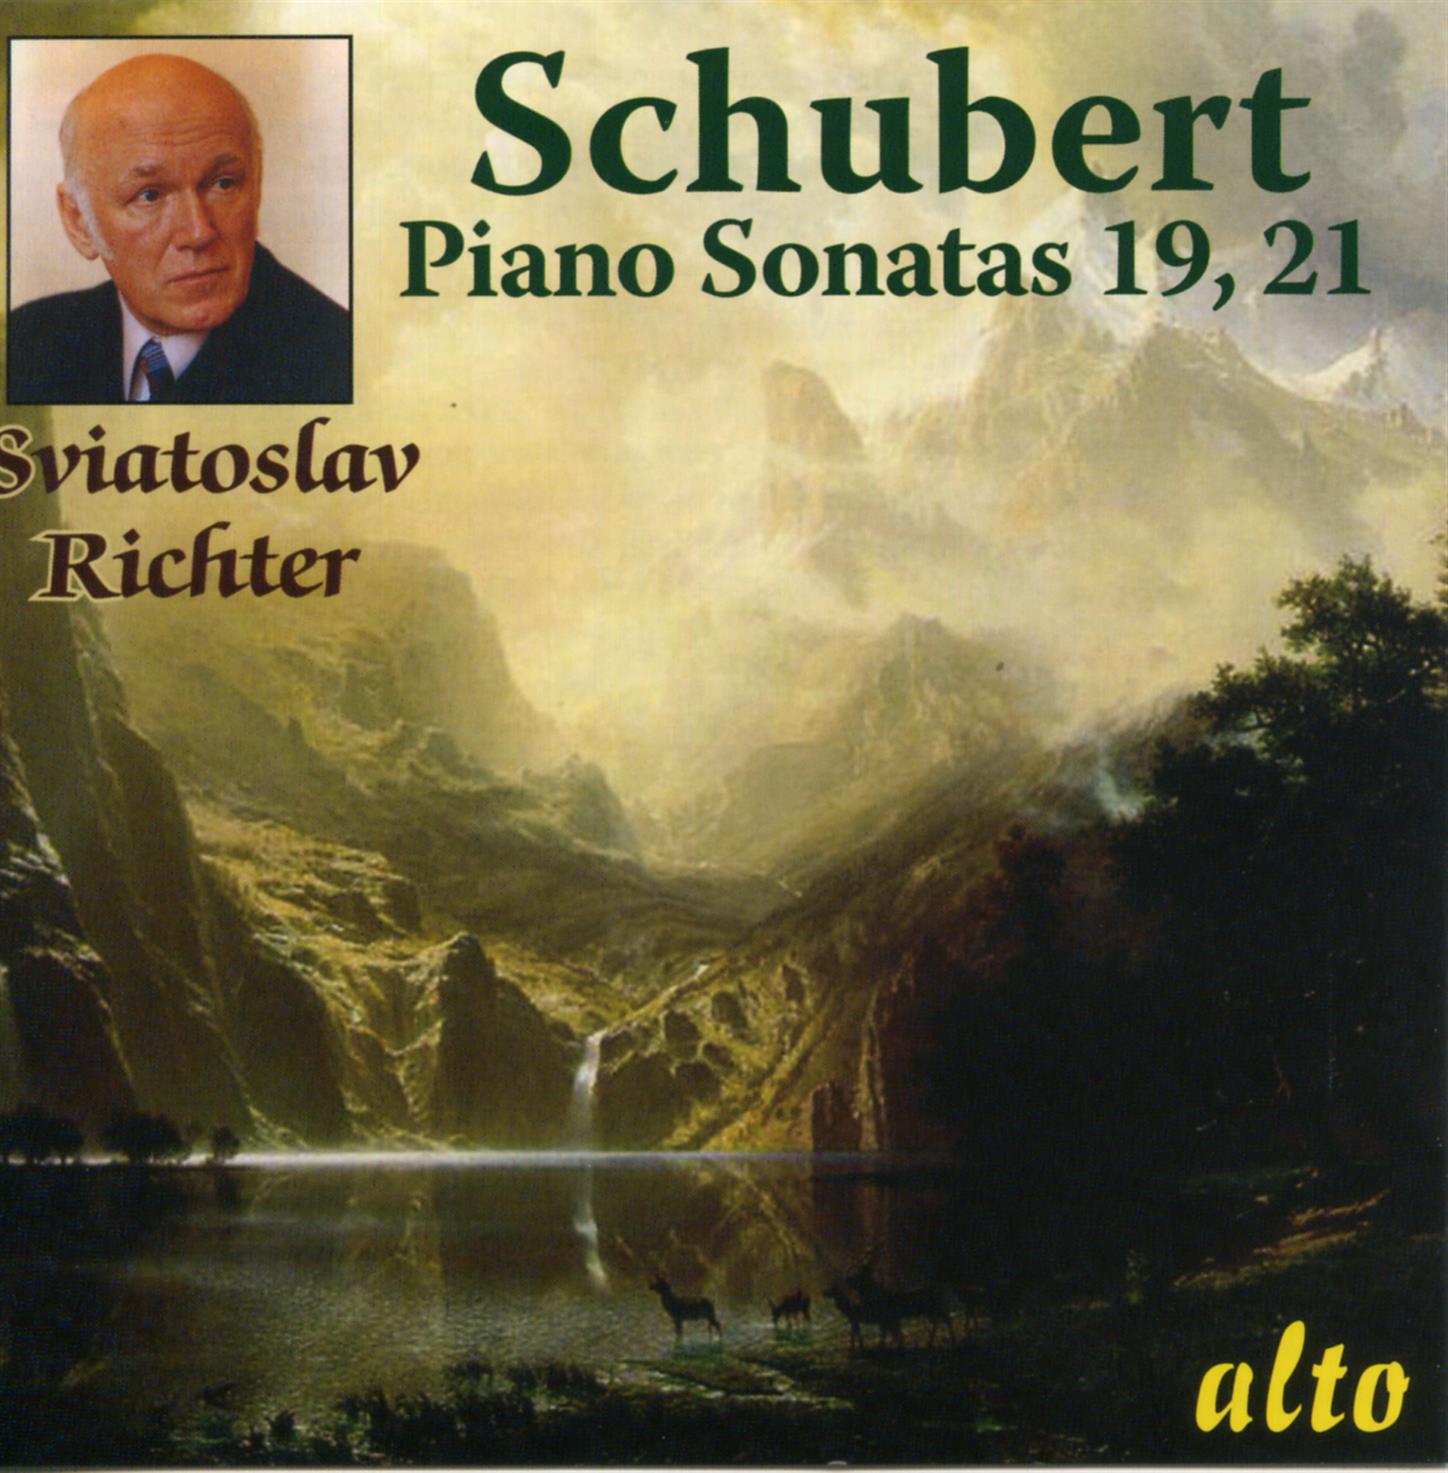 Piano Sonata No. 21 in B flat major, Op.posth. (D960): IV. Allegro non troppo